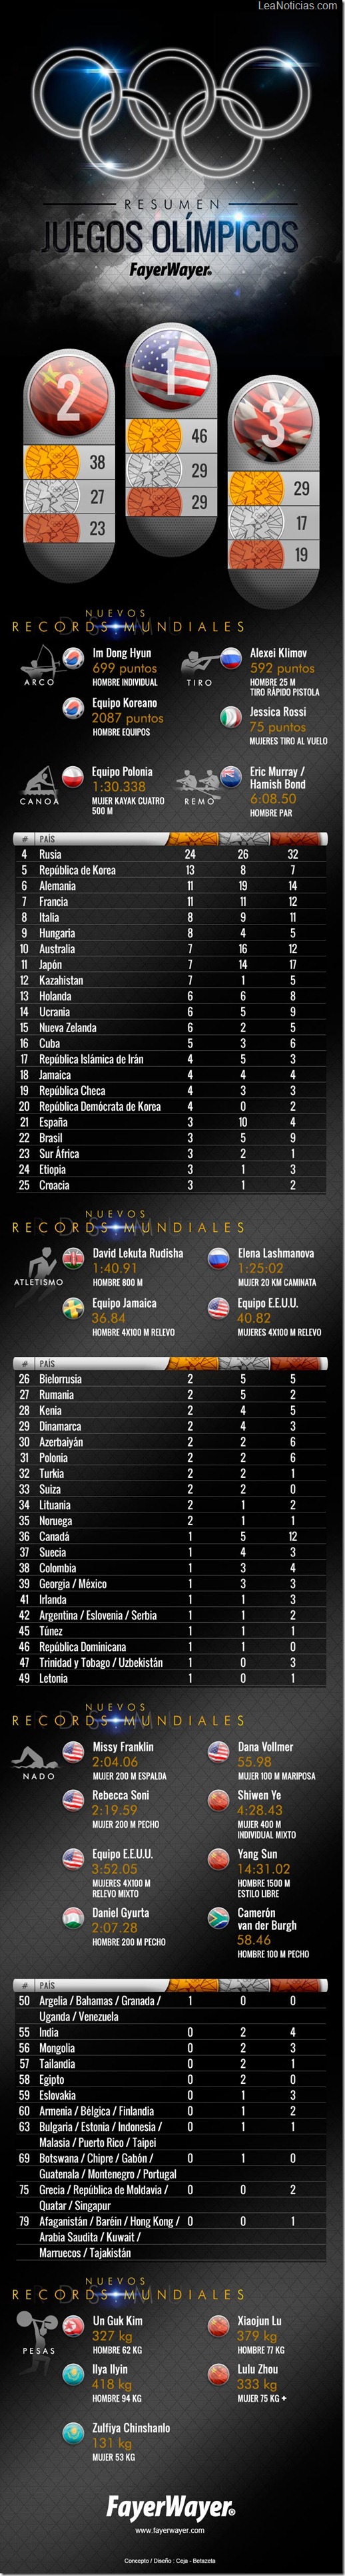 Infografia_Medallas_Juegos-Olimpicos-1